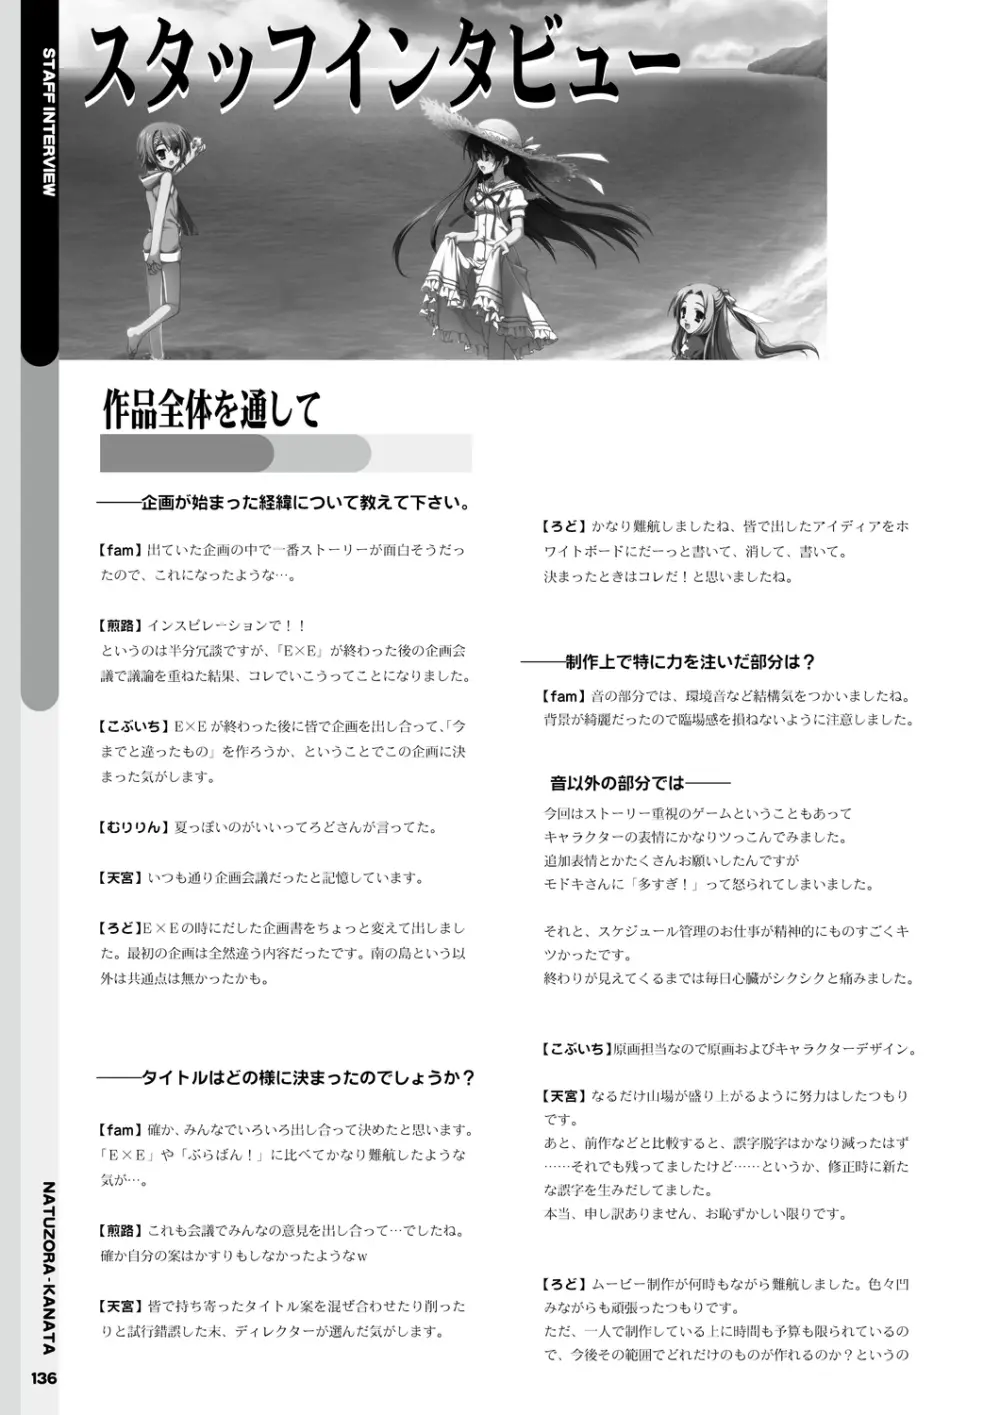 夏空カナタ オフィシャル・ビジュアルファンブック 138ページ